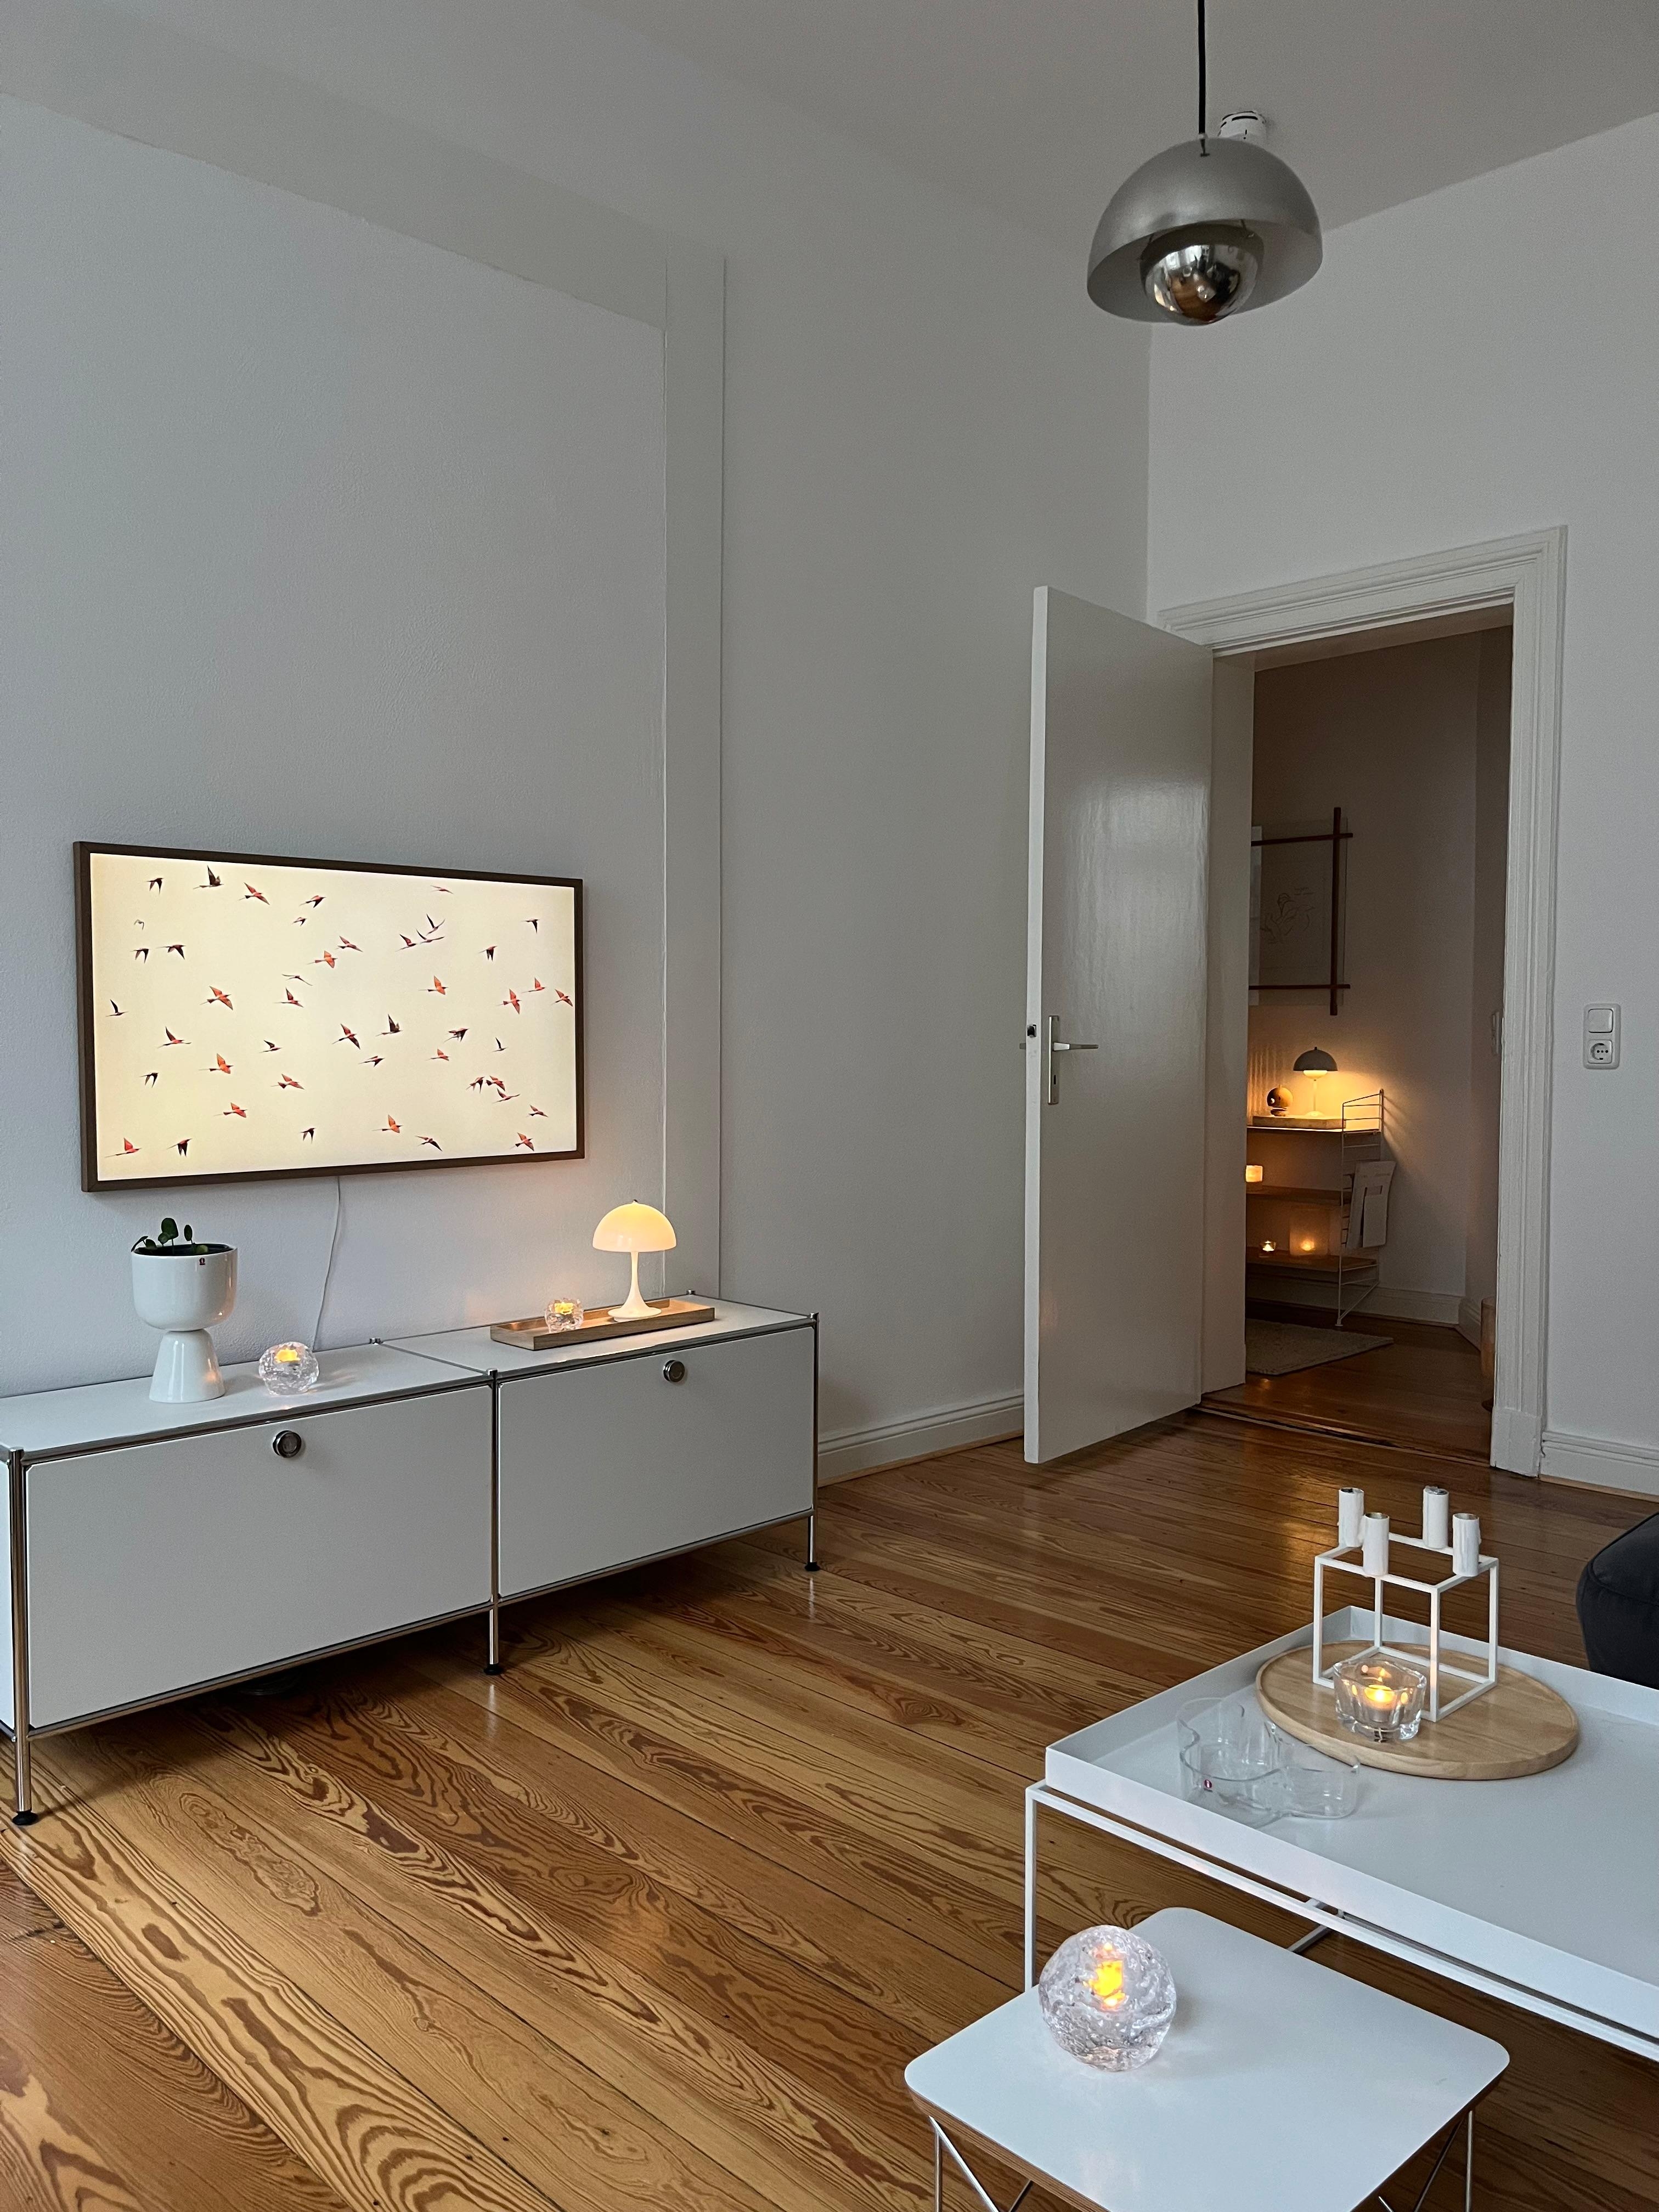 #wohnzimmer #altbauliebe #altbaucharme #danishdesign #skandinavischwohnen